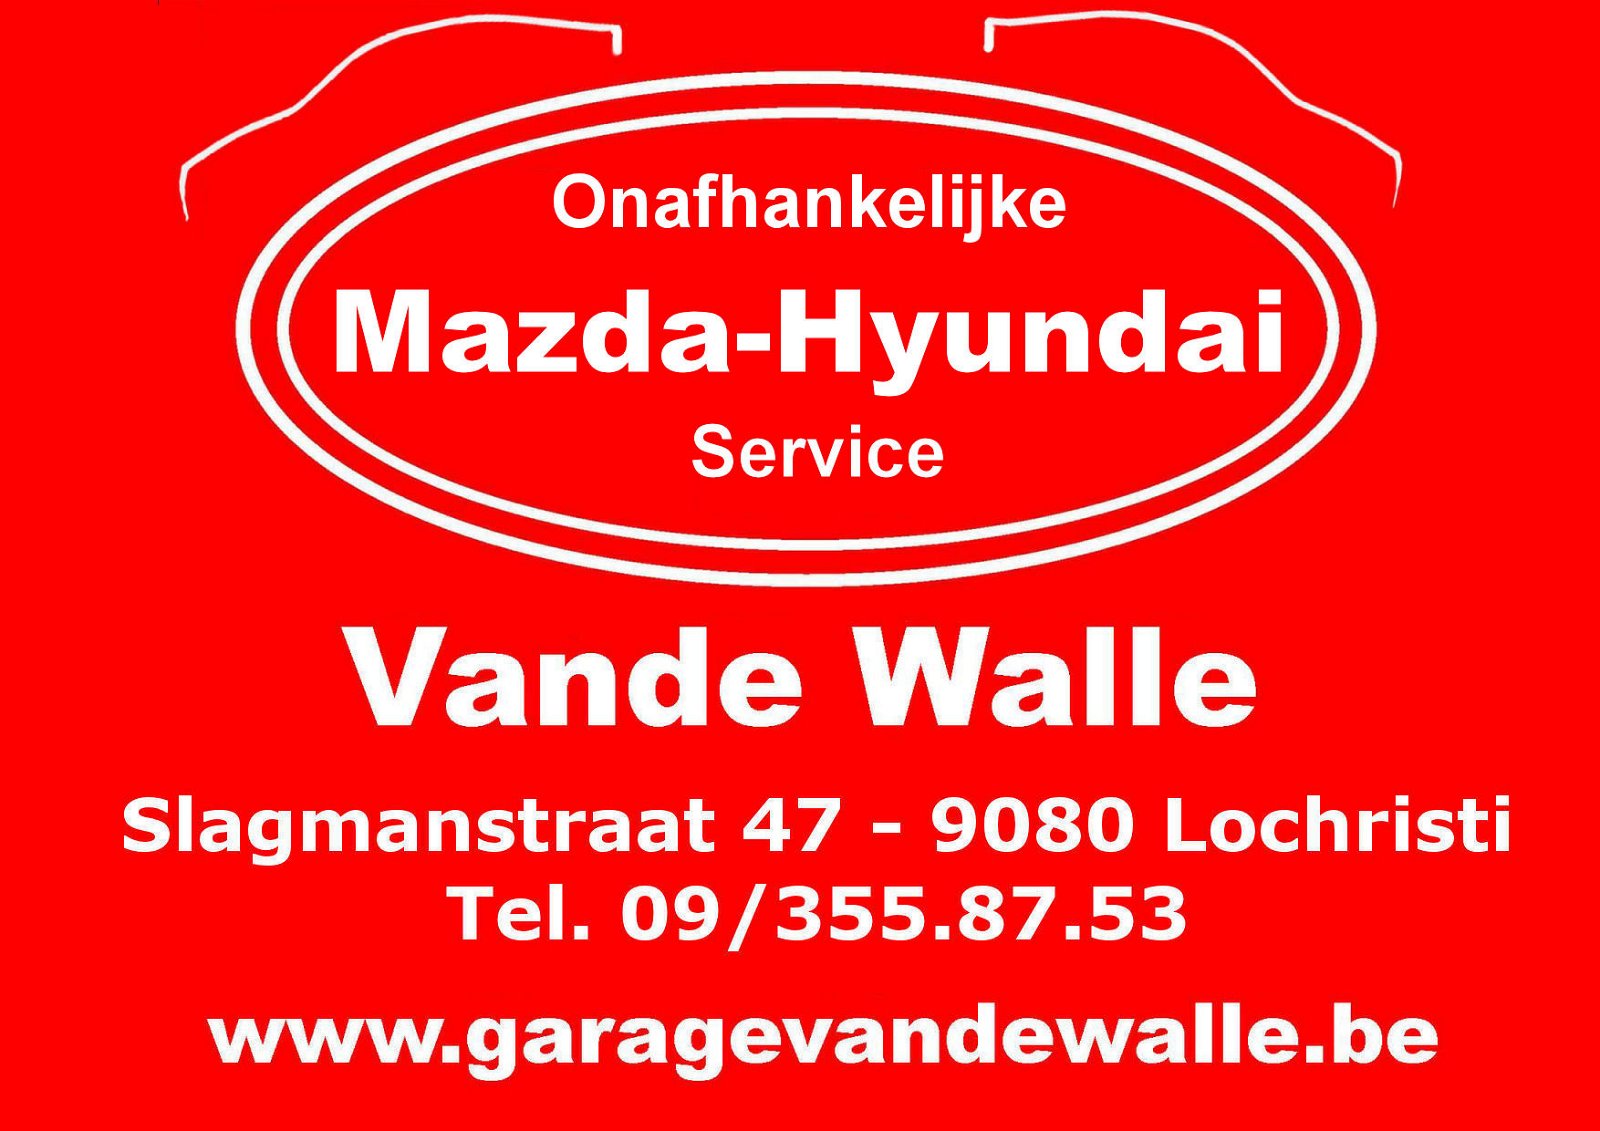 Garage Vande Walle